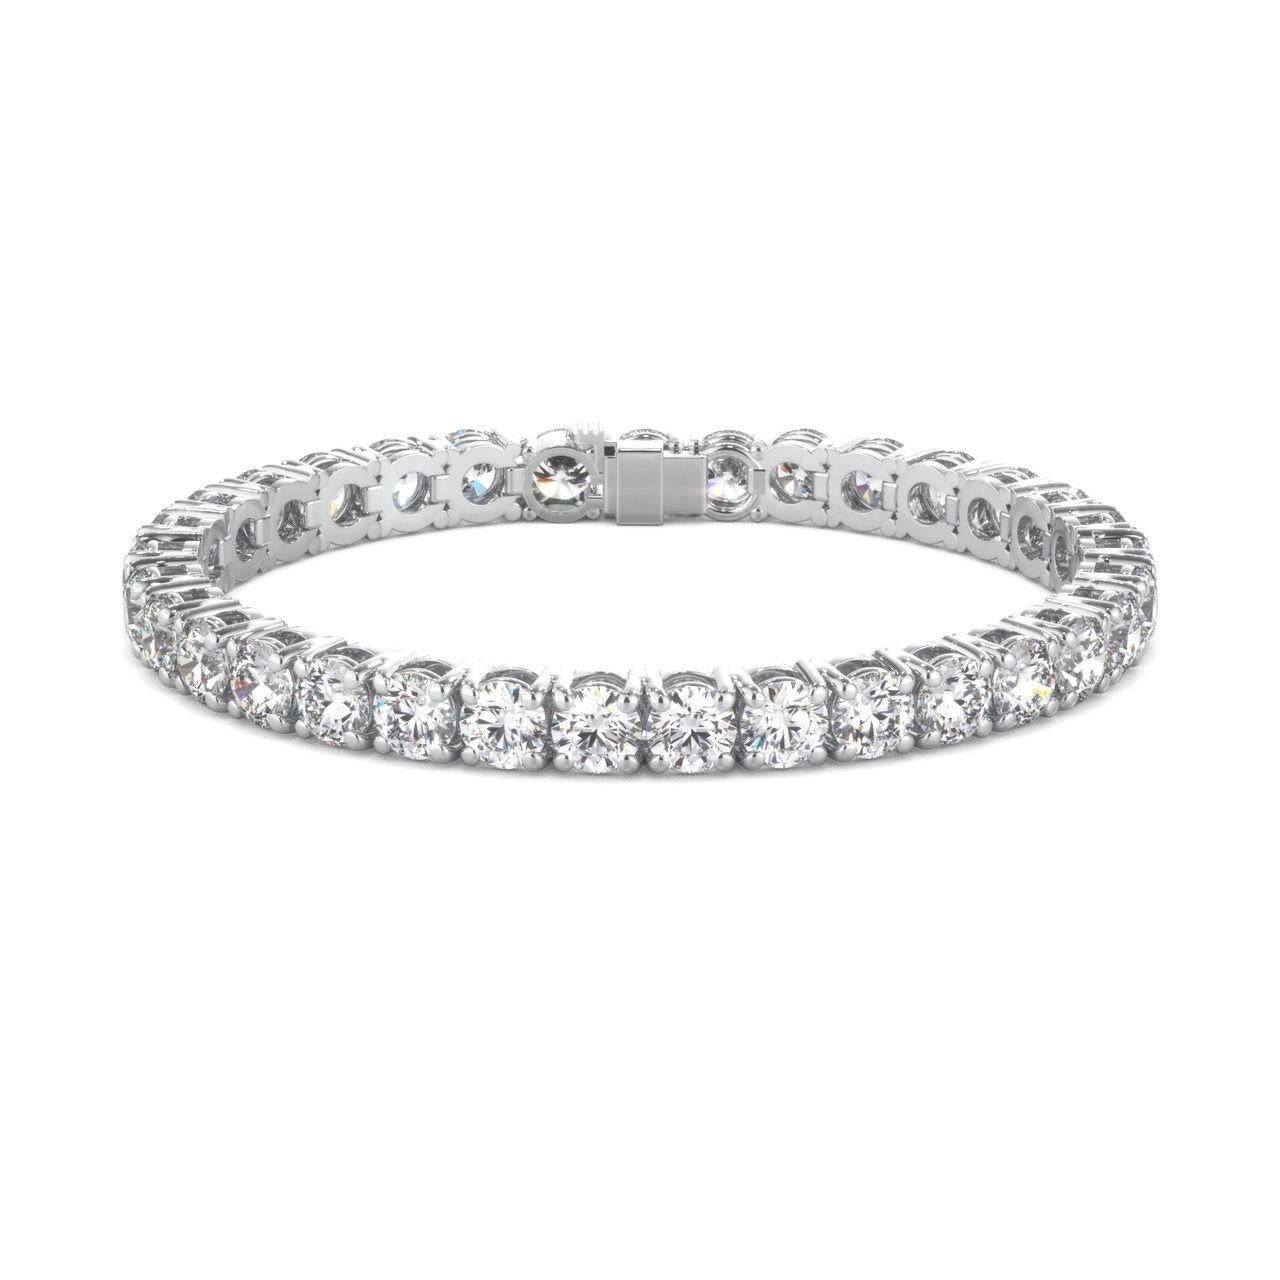 Dieses wunderbare Diamant-Tennisarmband hat ein ansprechendes 4-Zacken-Airline-Design. Außerdem sind runde Diamanten von insgesamt 5,50 Karat enthalten.
FARBE
VS1/VS2 KLARHEIT